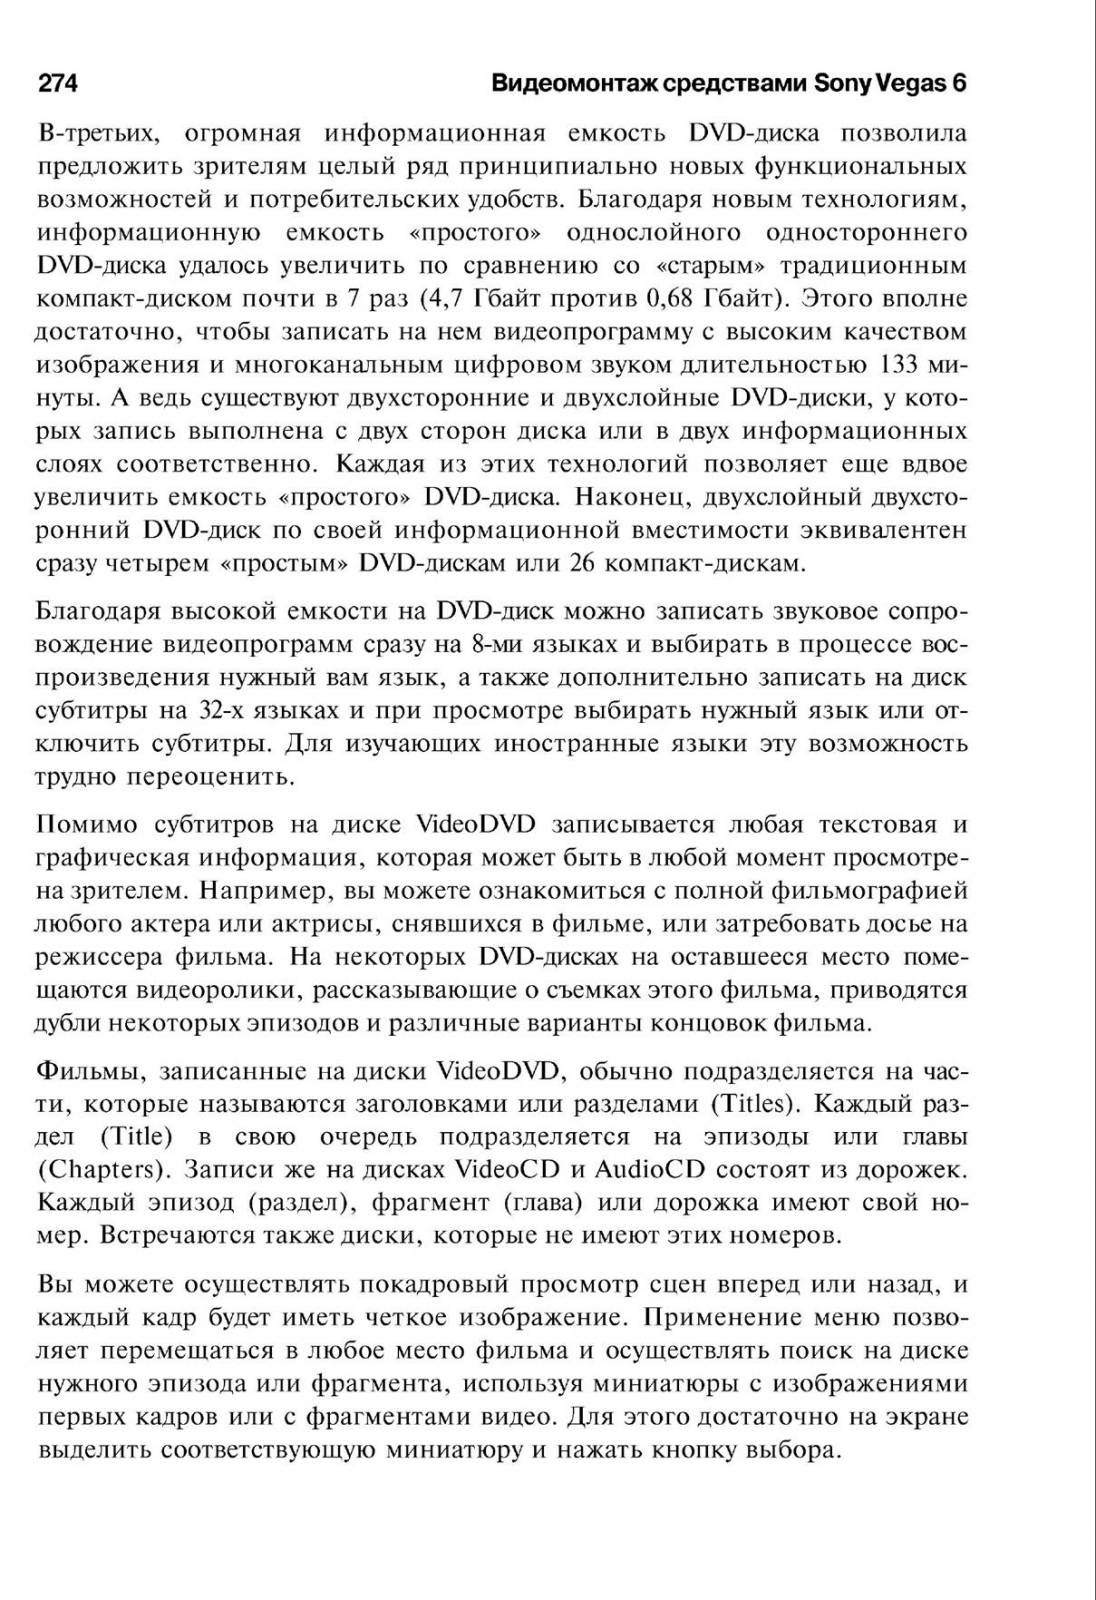 http://redaktori-uroki.3dn.ru/_ph/14/283494419.jpg